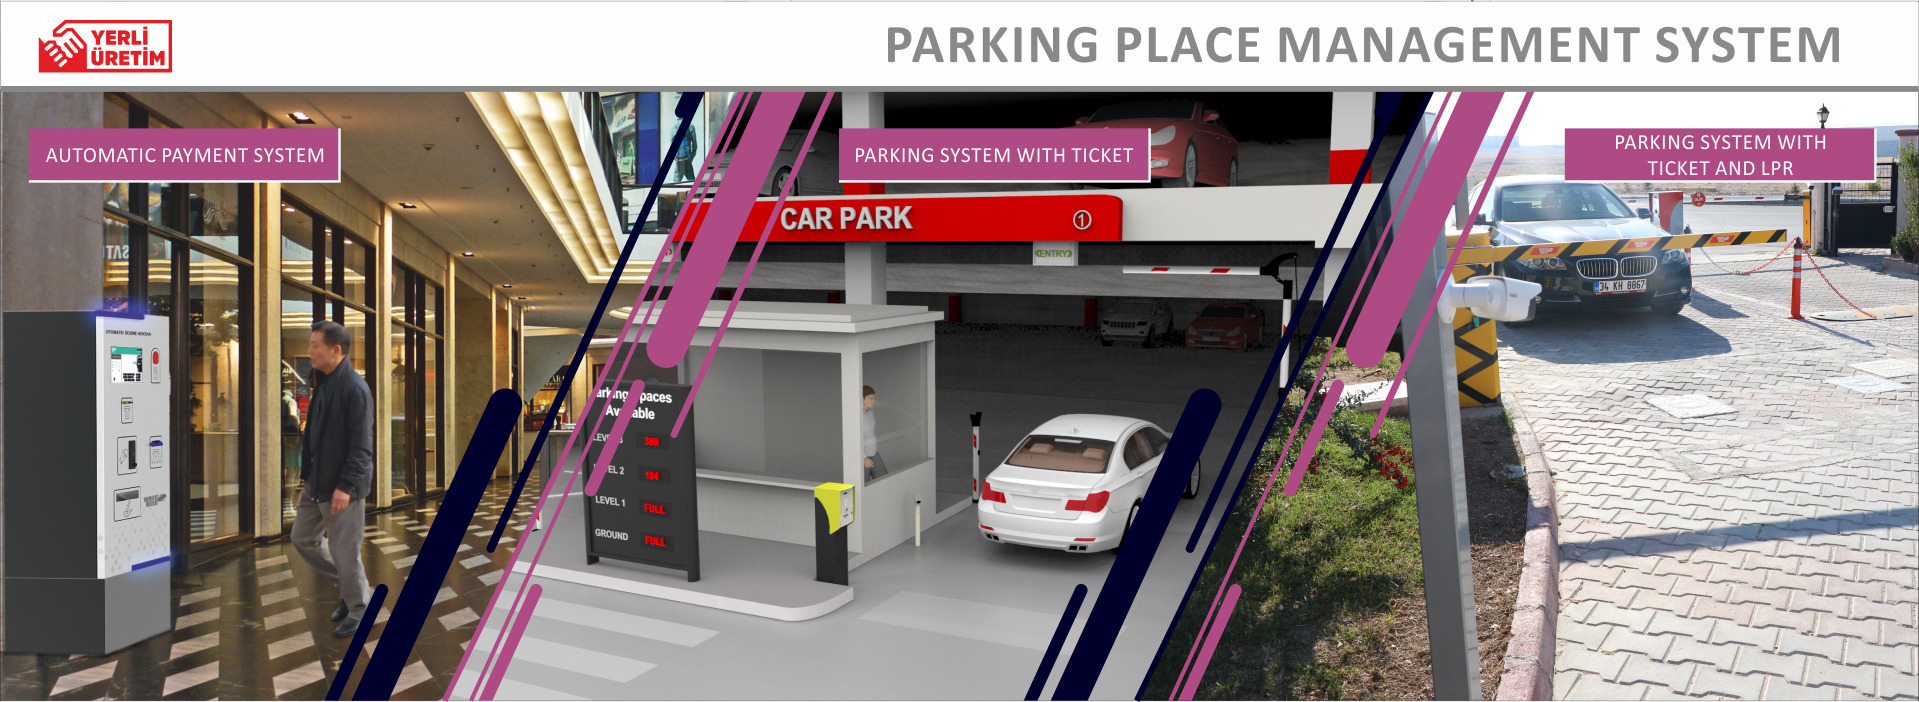 Parking Place Management System